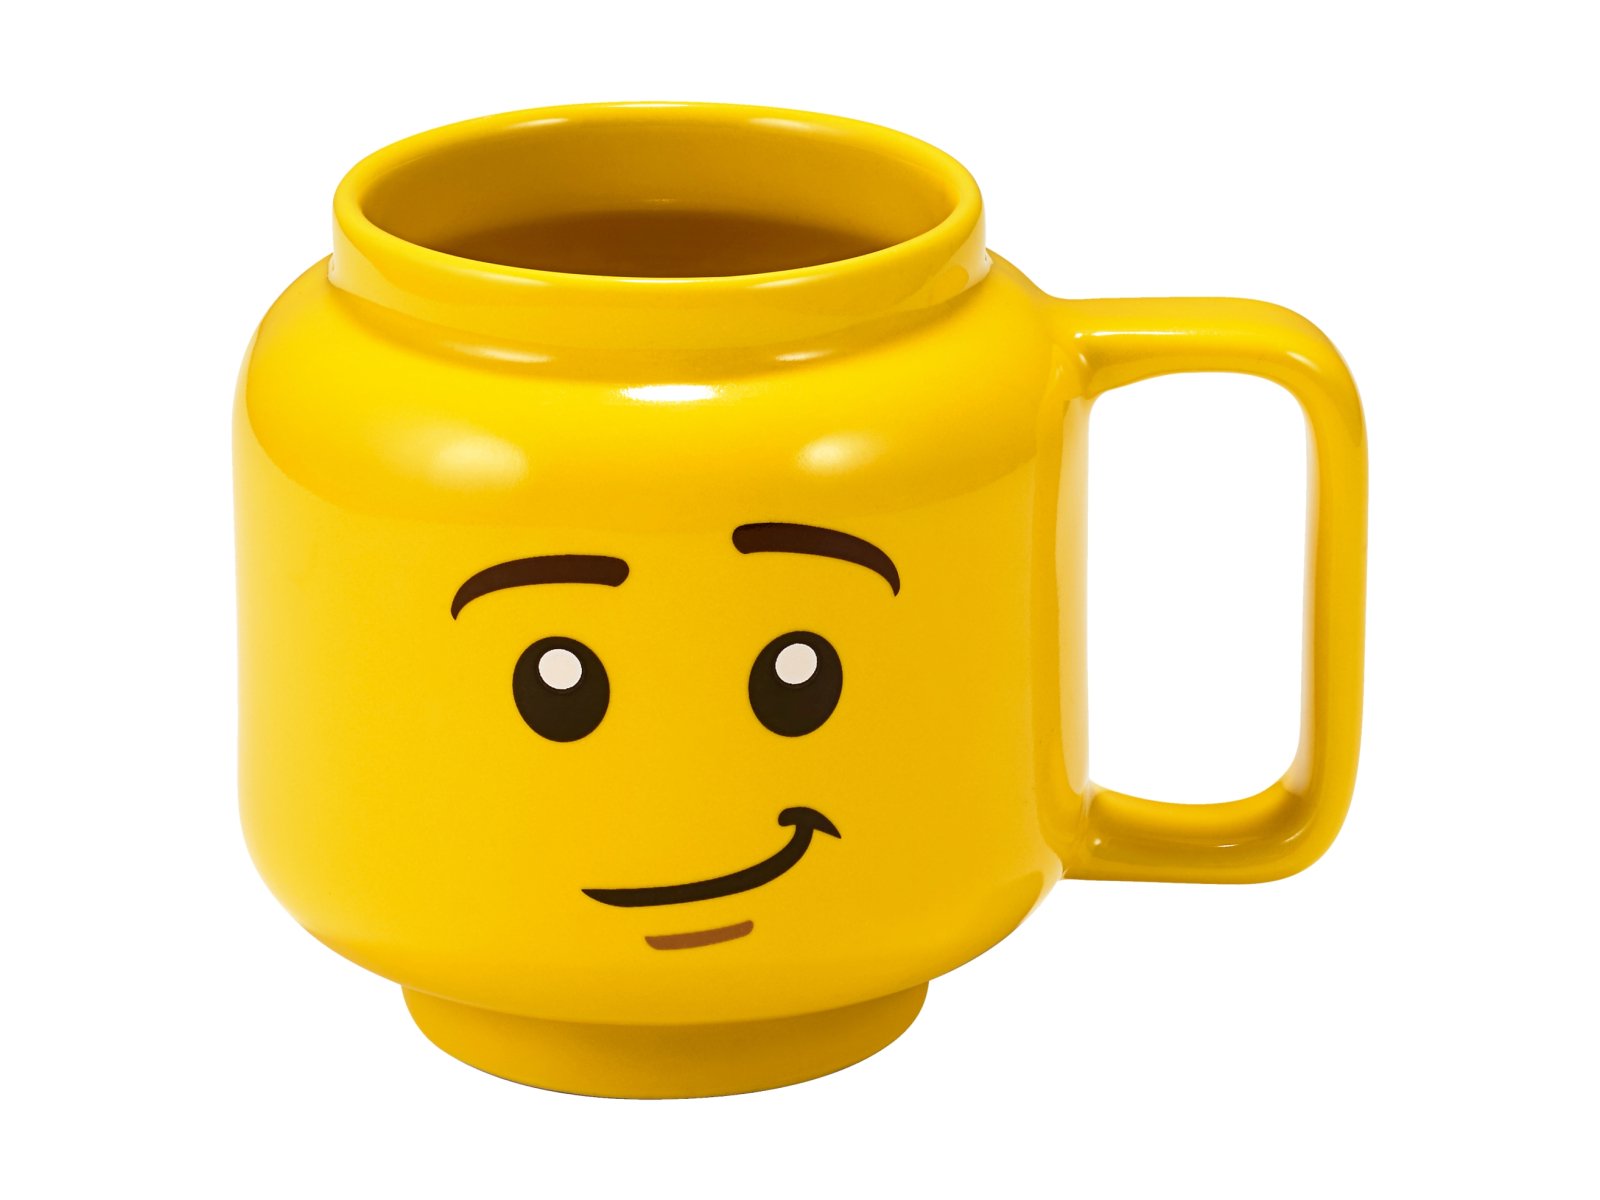 LEGO 853910 Kubek z minifigurką LEGO®